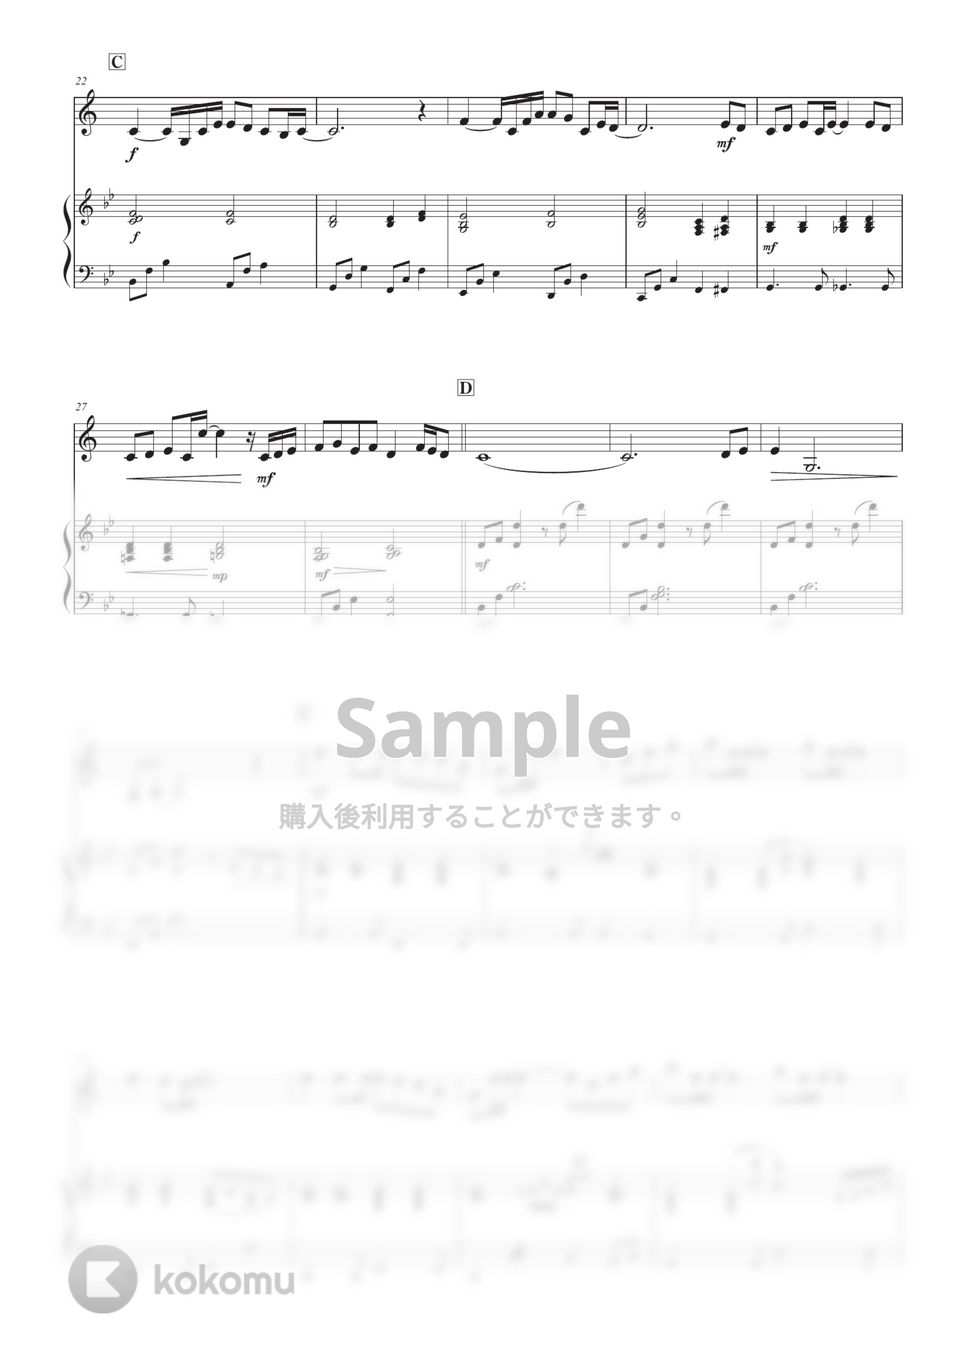 中島みゆき - 糸 (クラリネット版) by 栗原義継